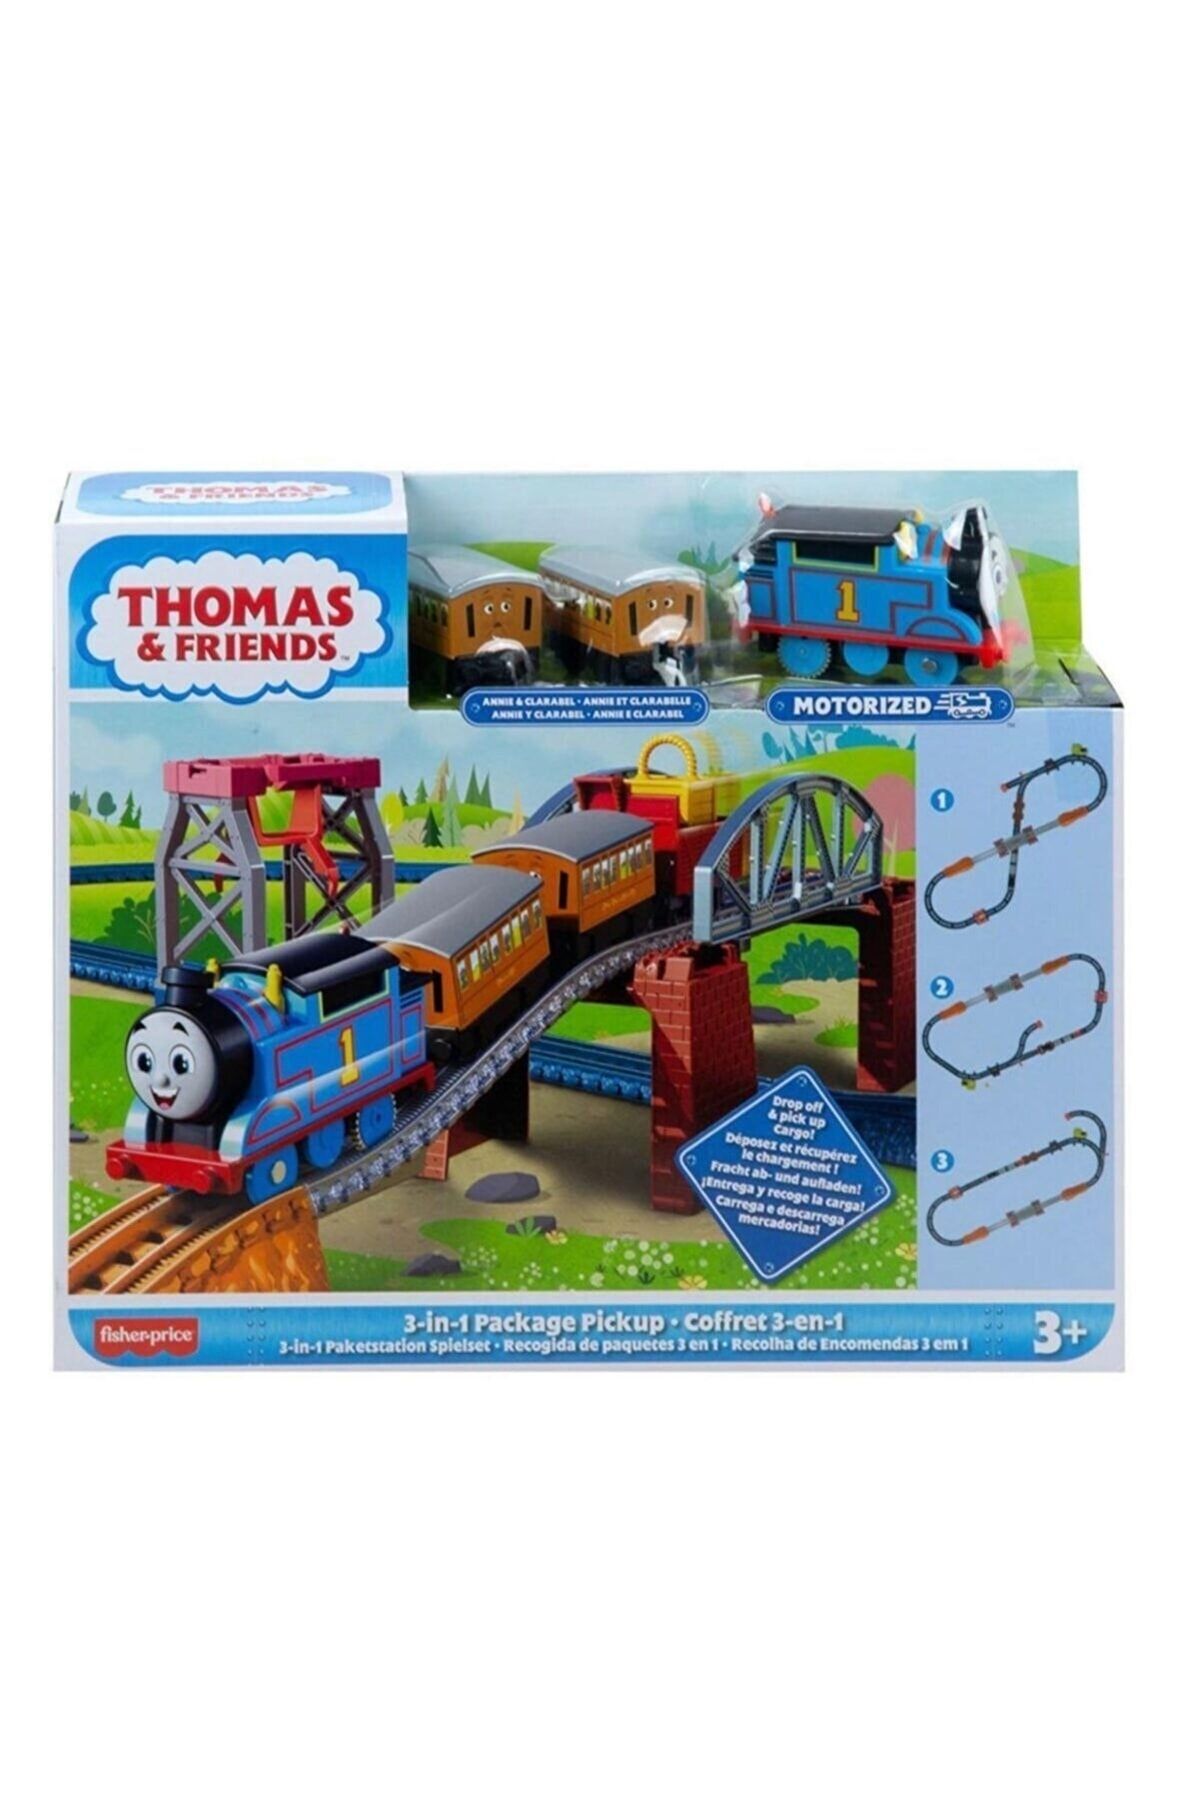 Tower Toys Thomas Ve Arkadaşları-3ü1 Arada Kargo Macerası Oyun Seti Thomas And Friends Yeni Tren Seti